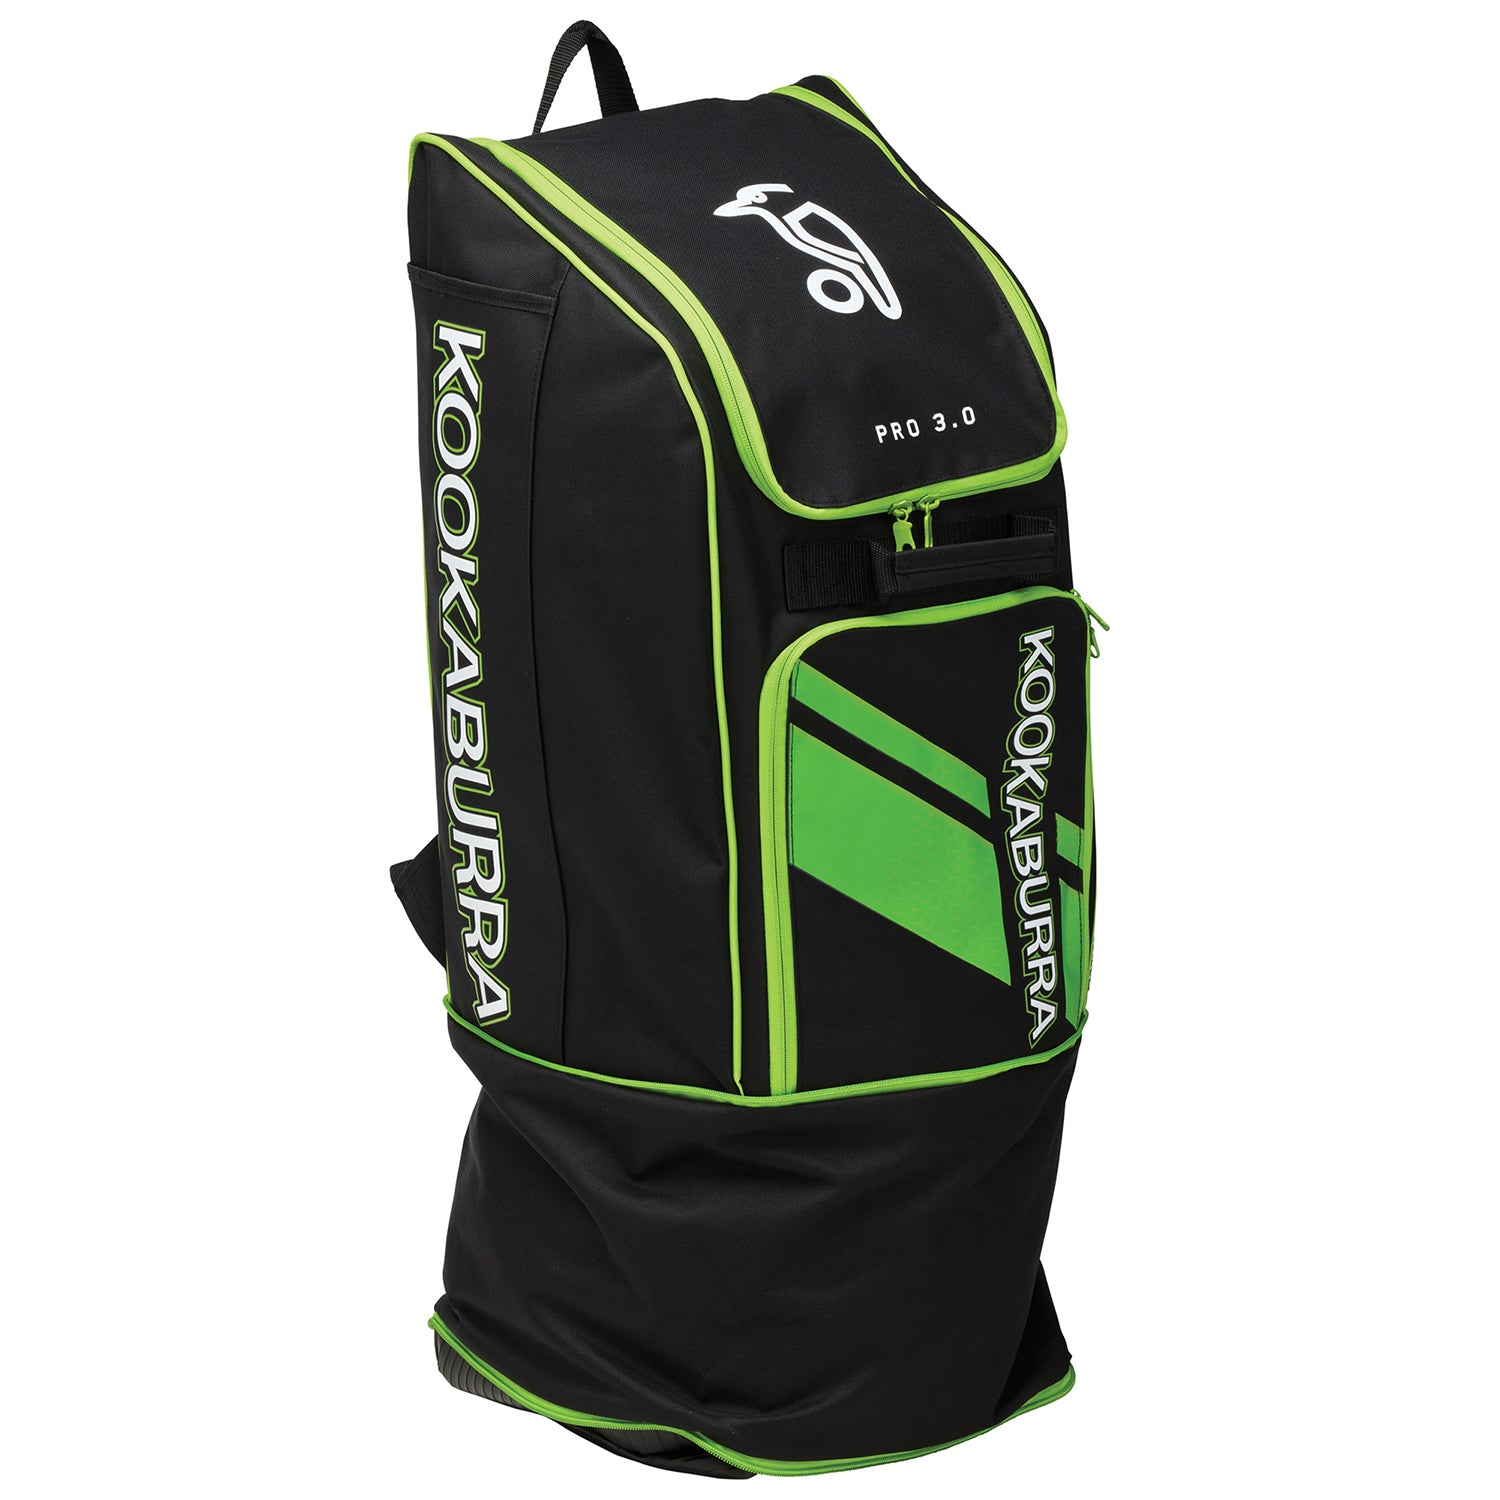 Kookaburra Pro 3.0 Cricket Duffle Bag